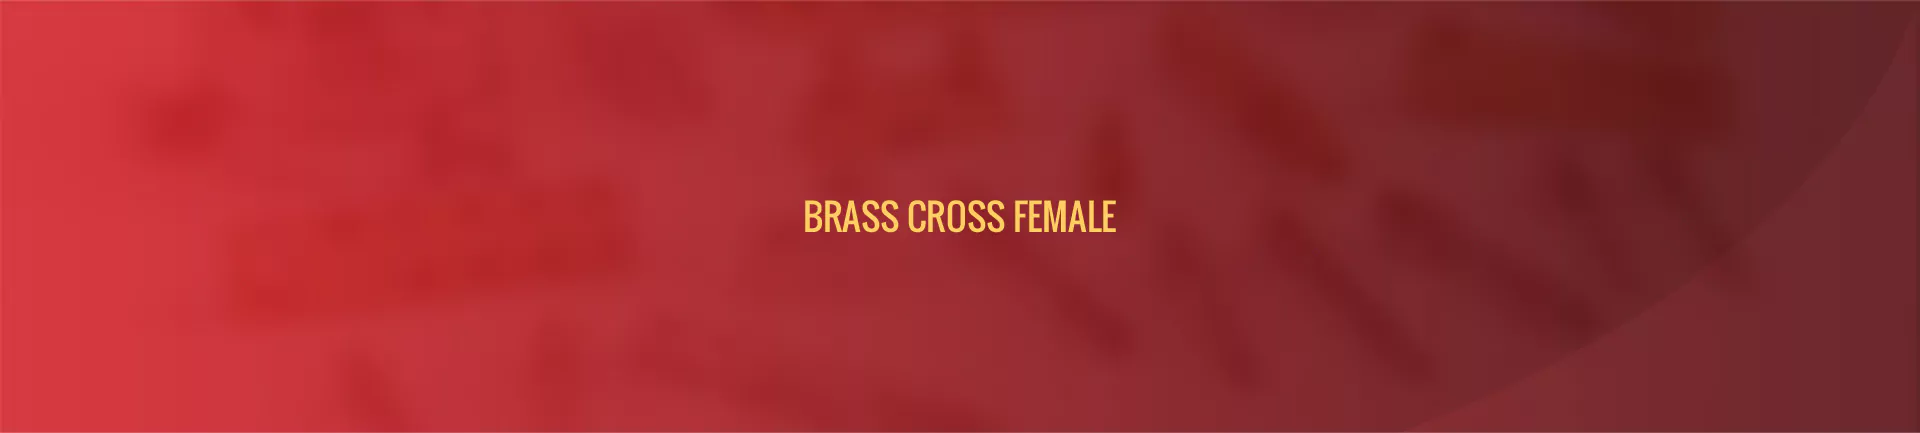 brass_cross_female-banner